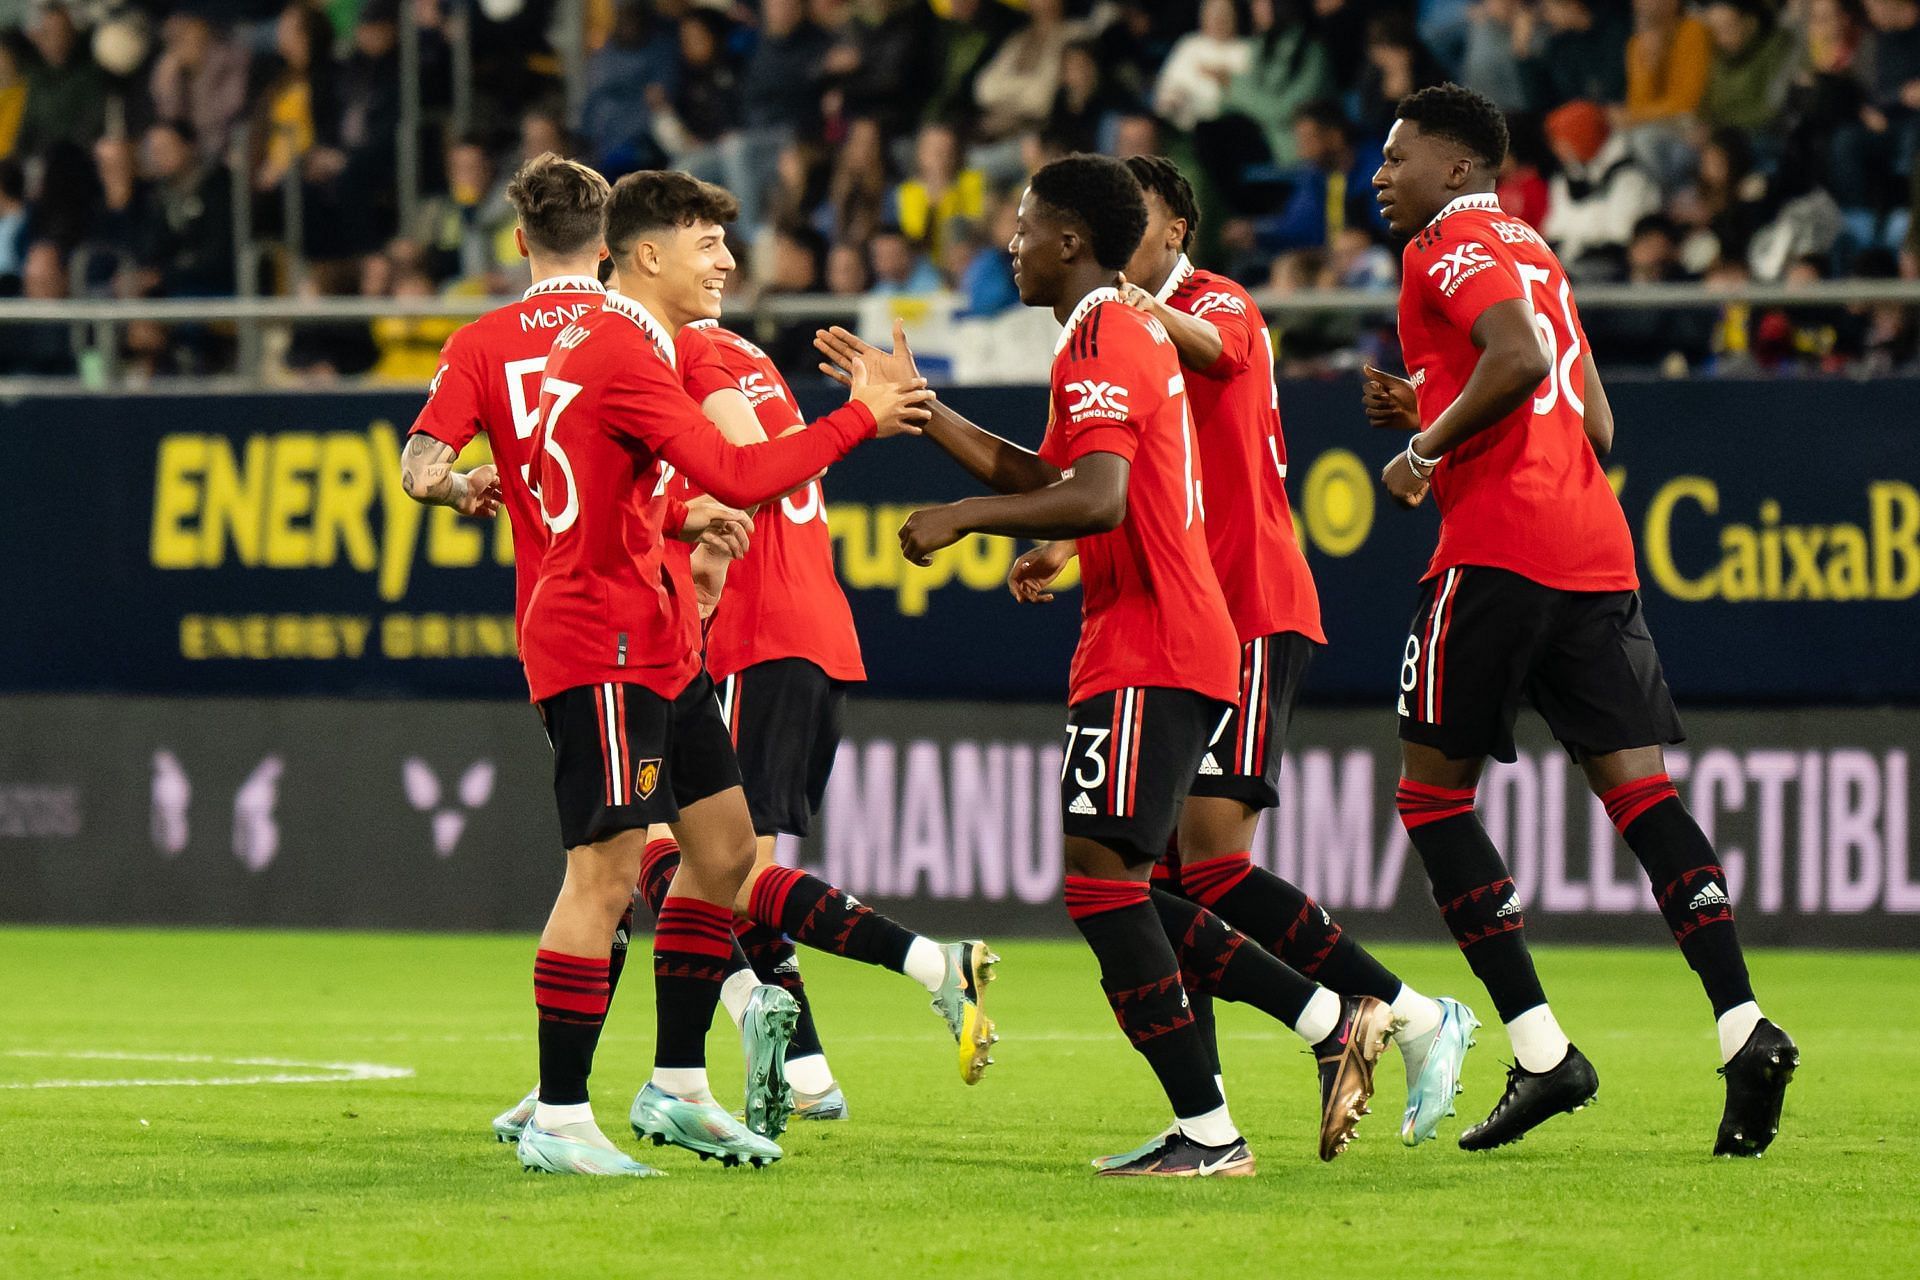 Kobbie Mainoo (center) celebrates after scoring a goal against Cadiz